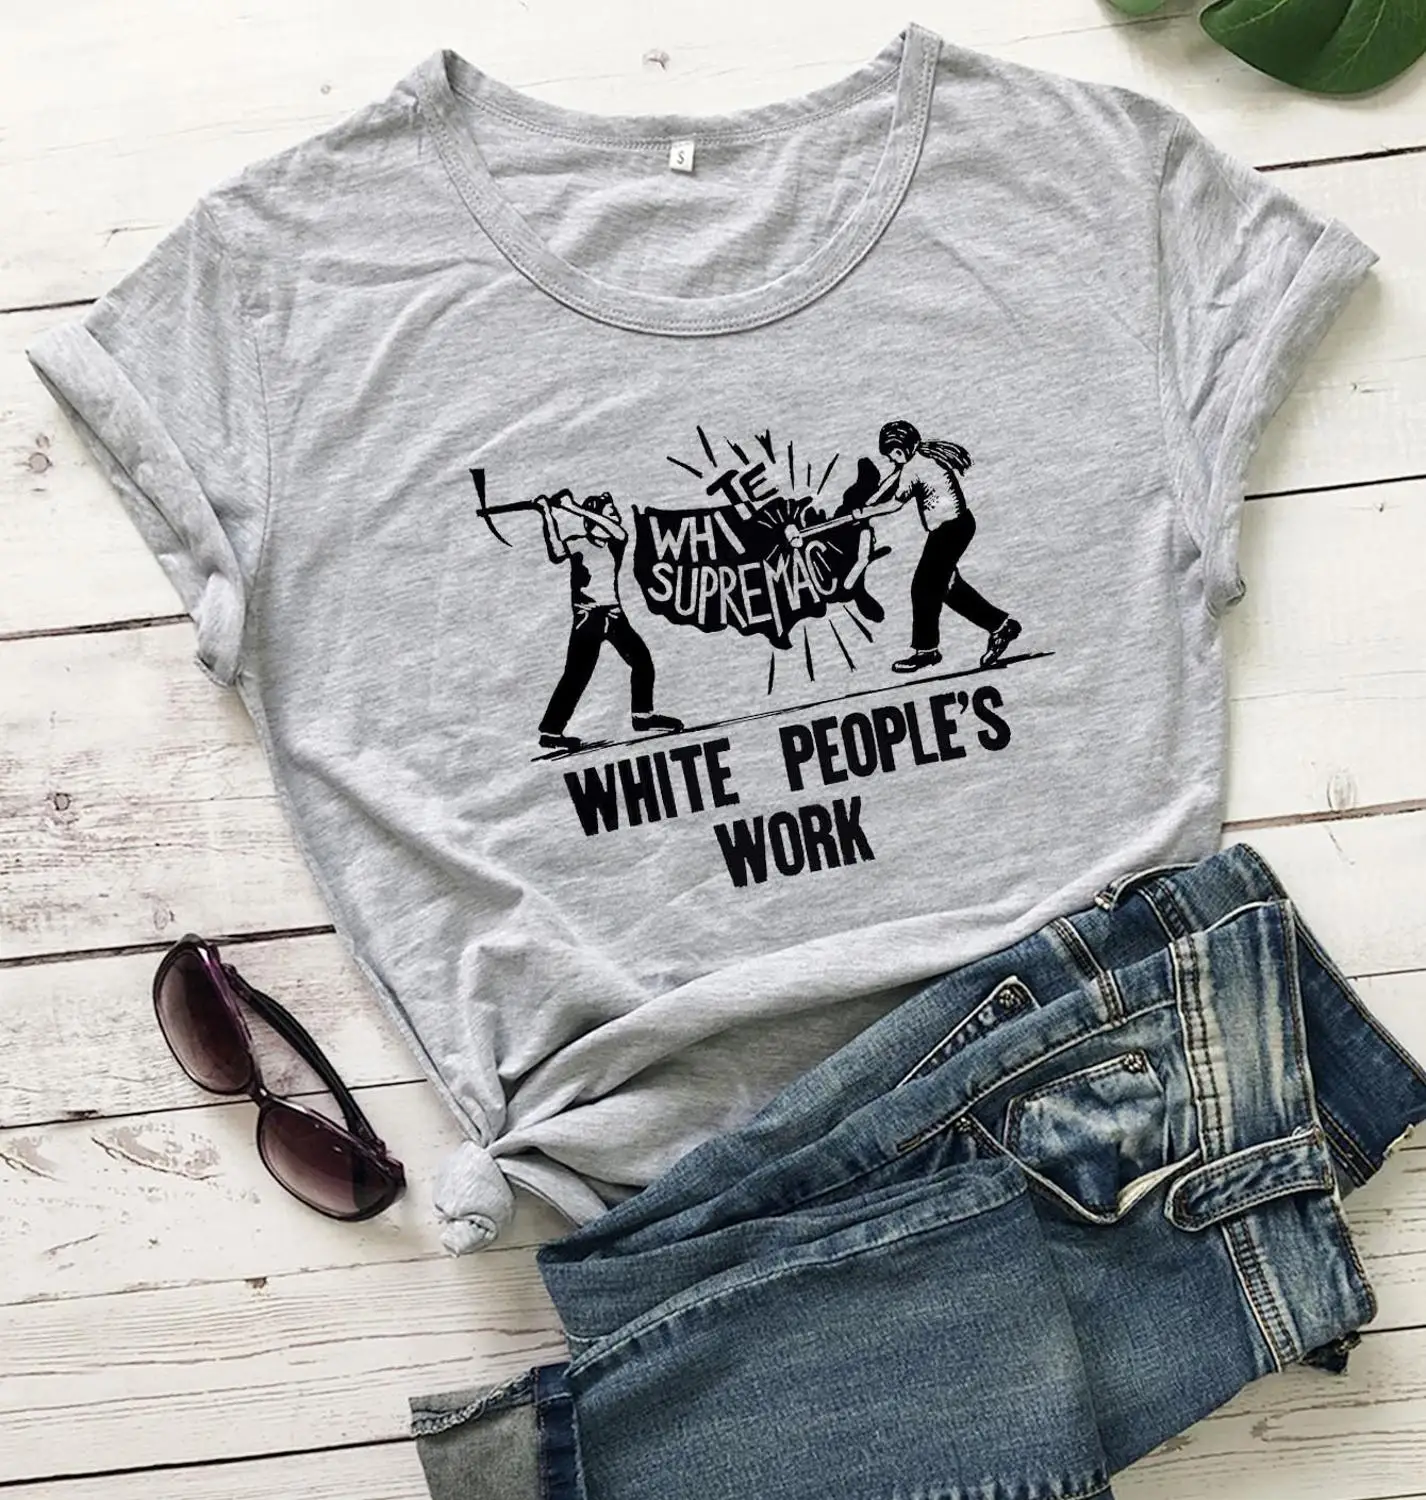 

Белая женская Рабочая Рубашка с графическим рисунком, модная забавная хлопковая Футболка со слоганом, молодежная хипстерская футболка с ре...